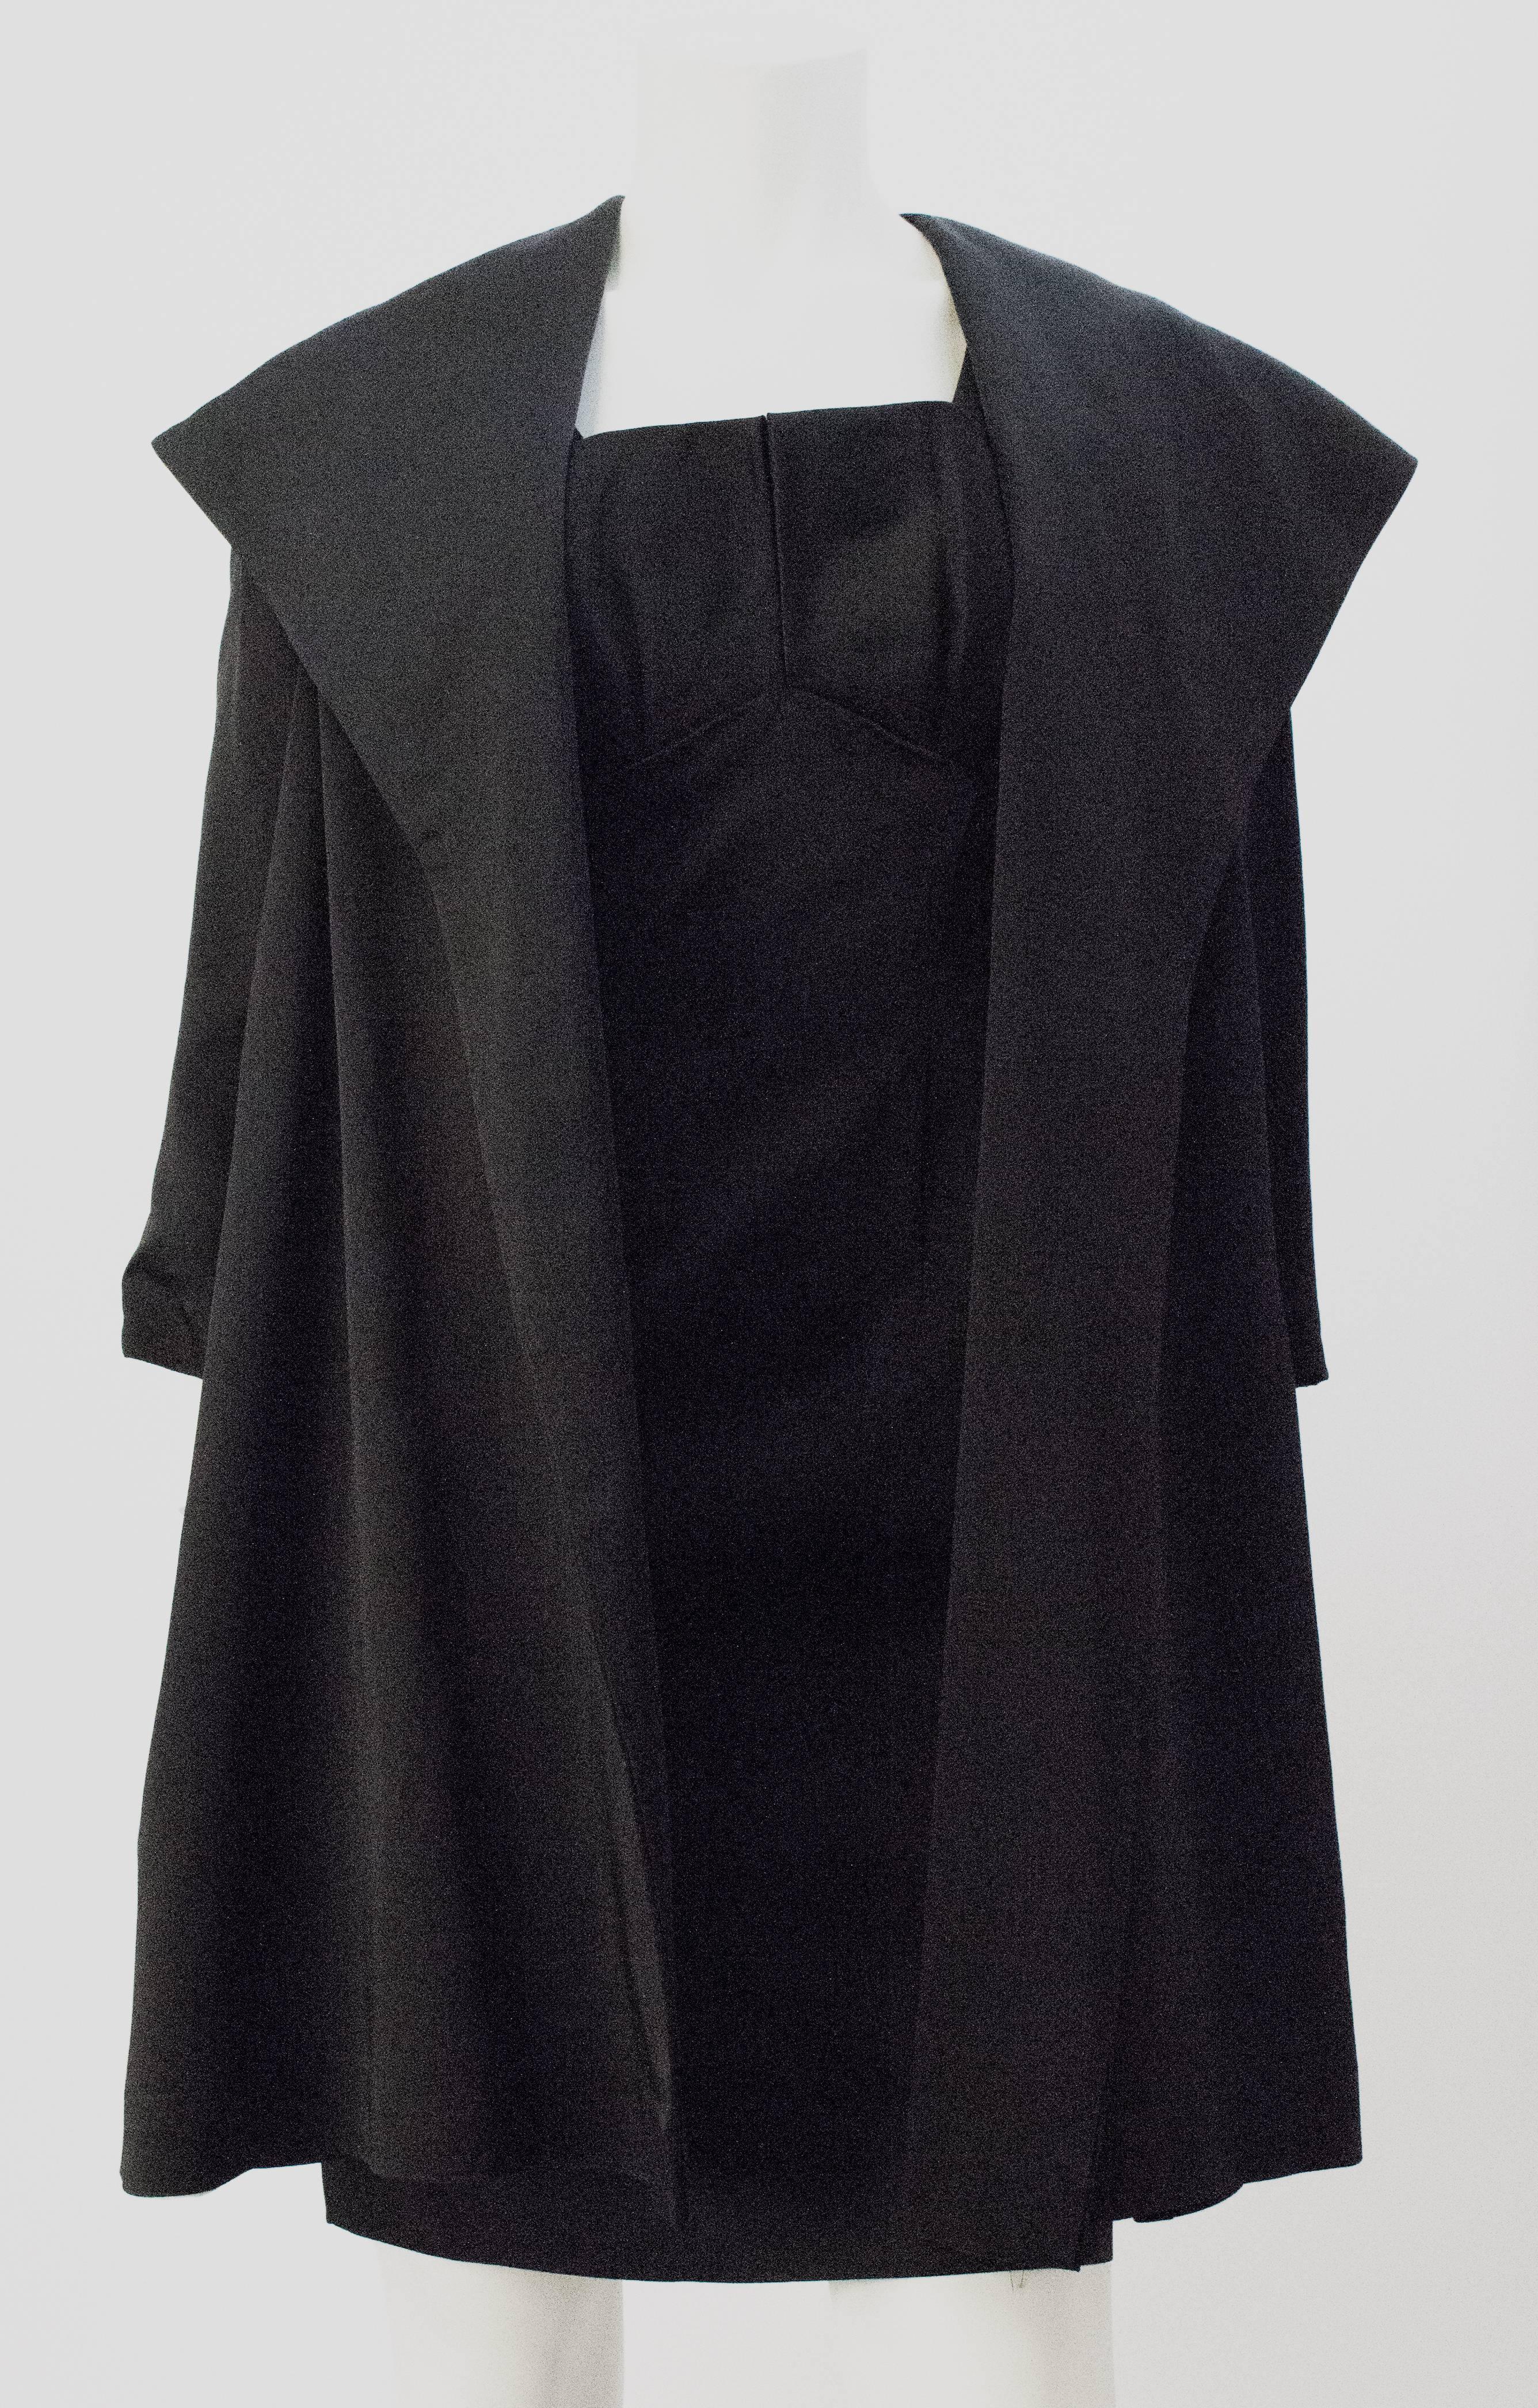 (Manteau seulement) Robe de cocktail des années 50 en satin noir avec un buste plissé et un manteau de soirée assorti en satin noir avec une doublure en satin champagne. Fermeture éclair centrale arrière en métal sur la robe.

Mesures de la robe